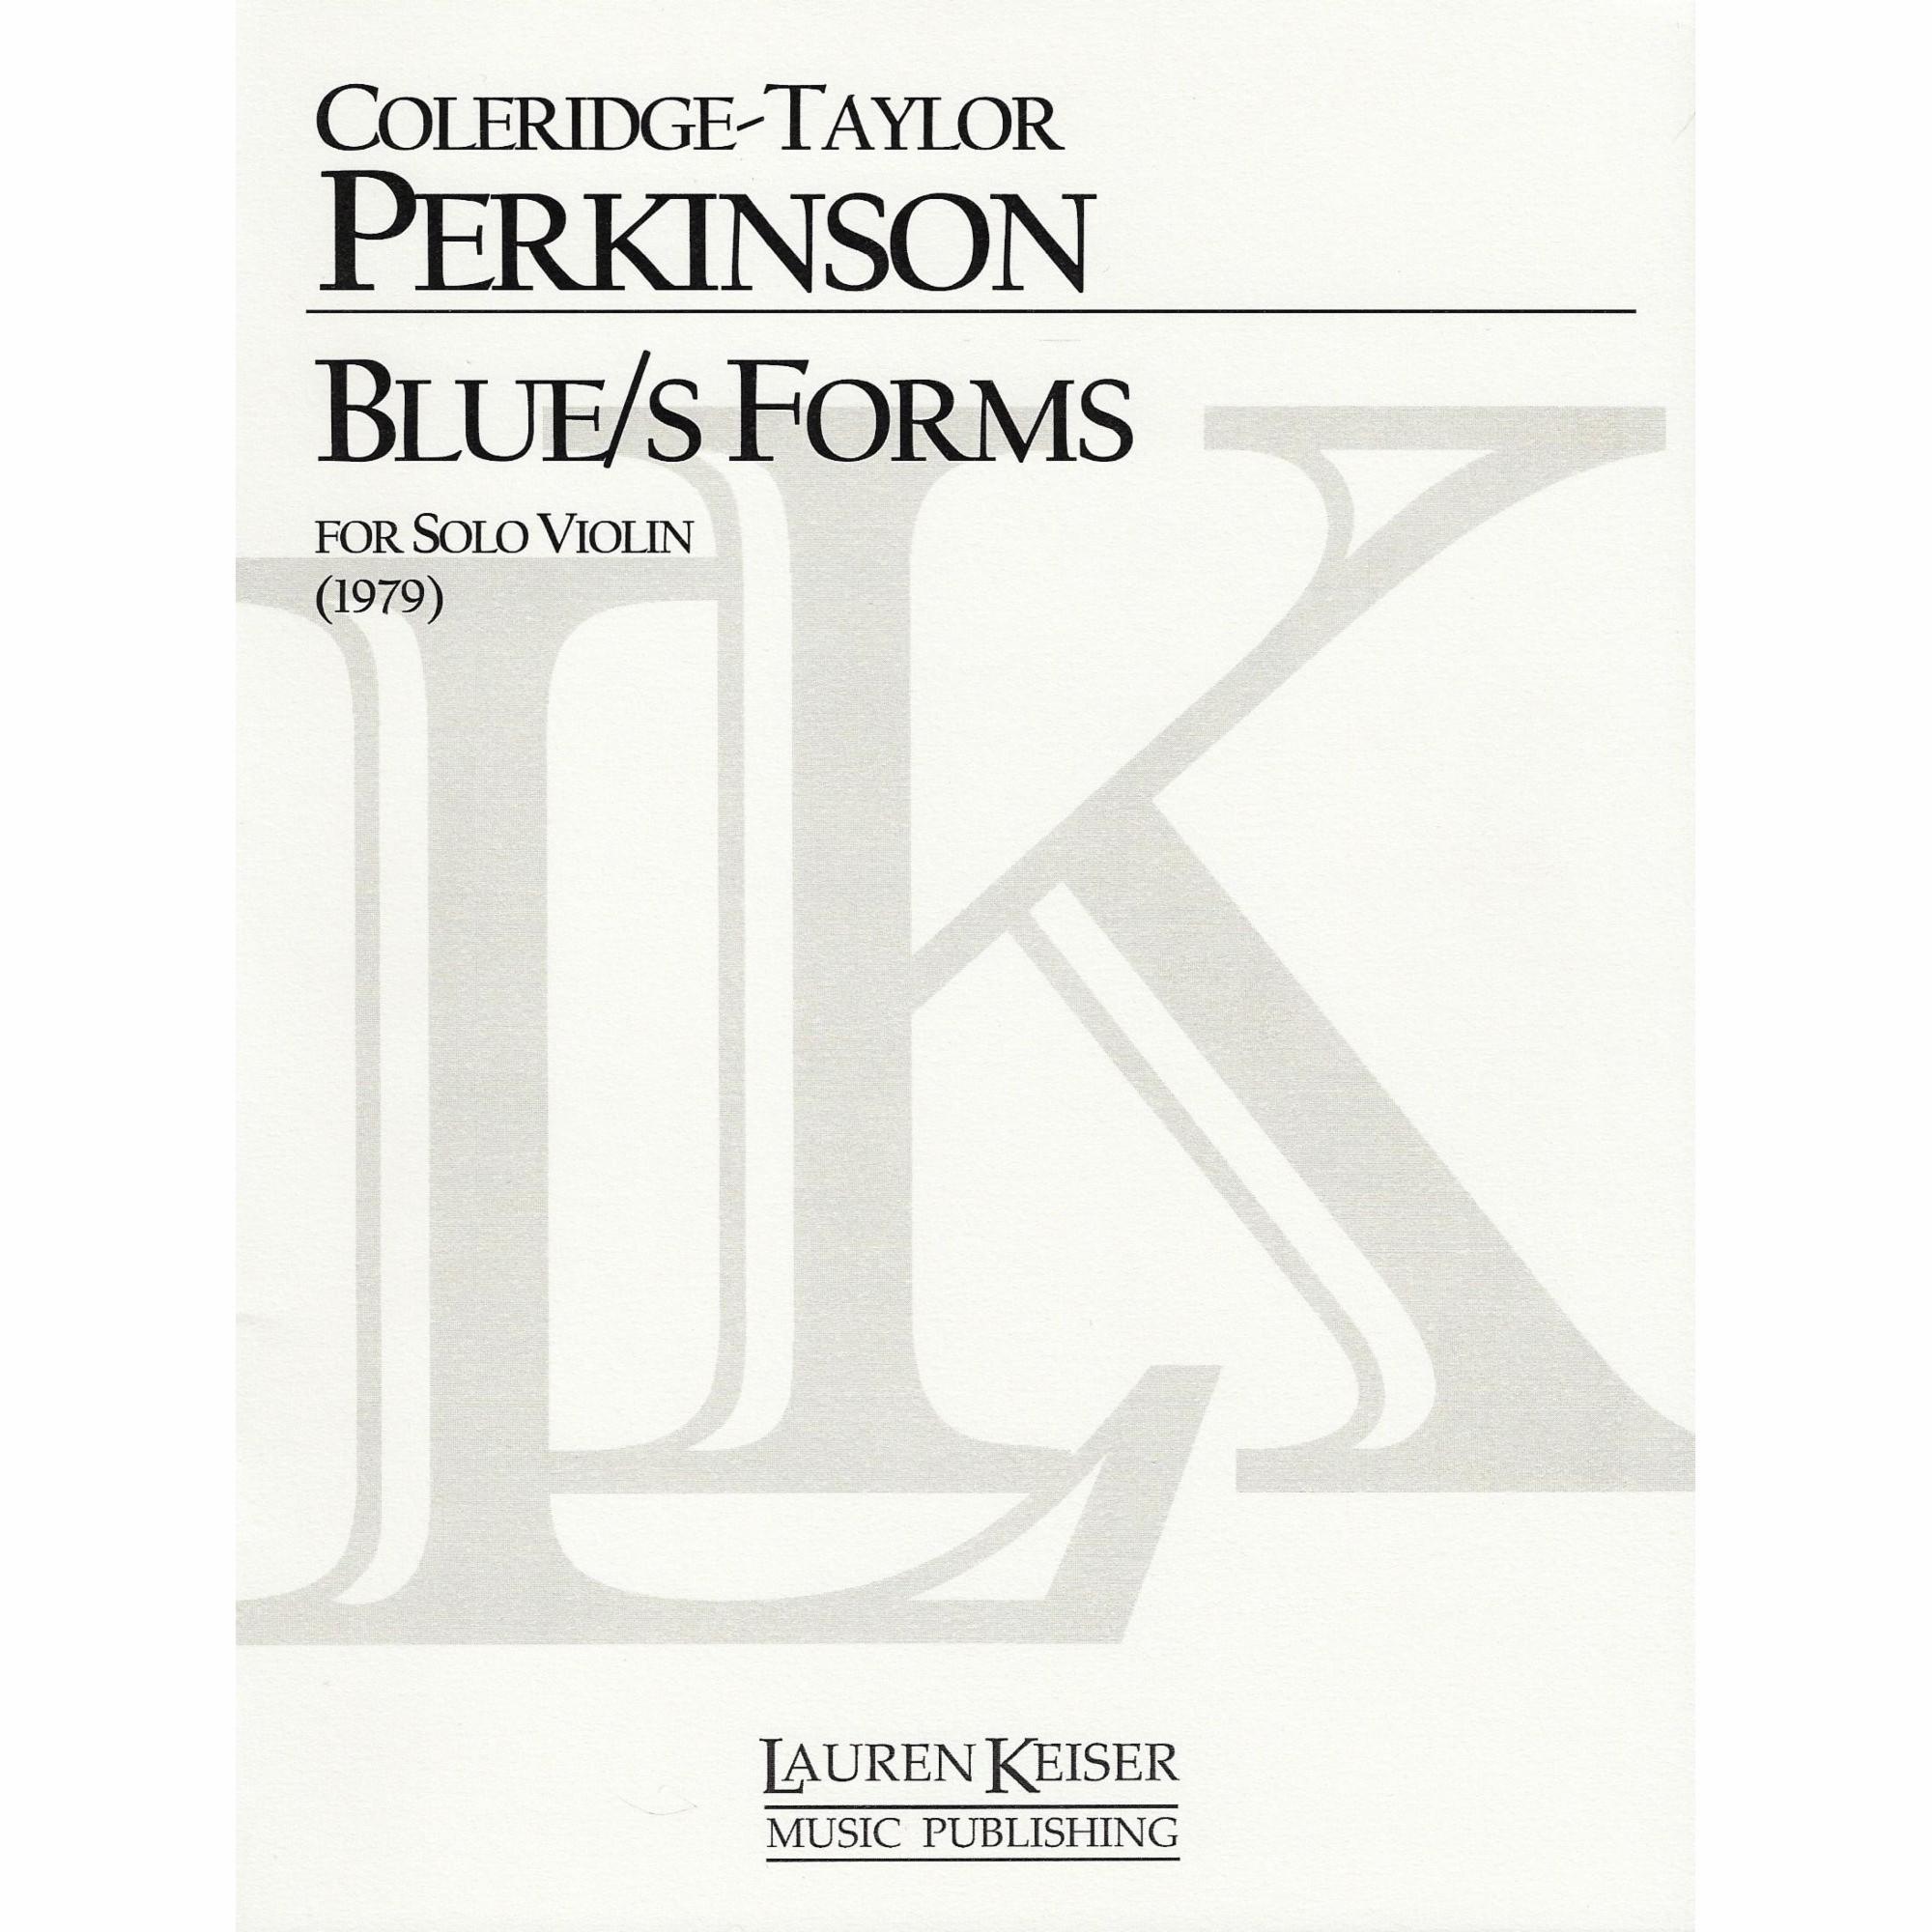 Perkinson -- Blue/s Forms for Solo Violin